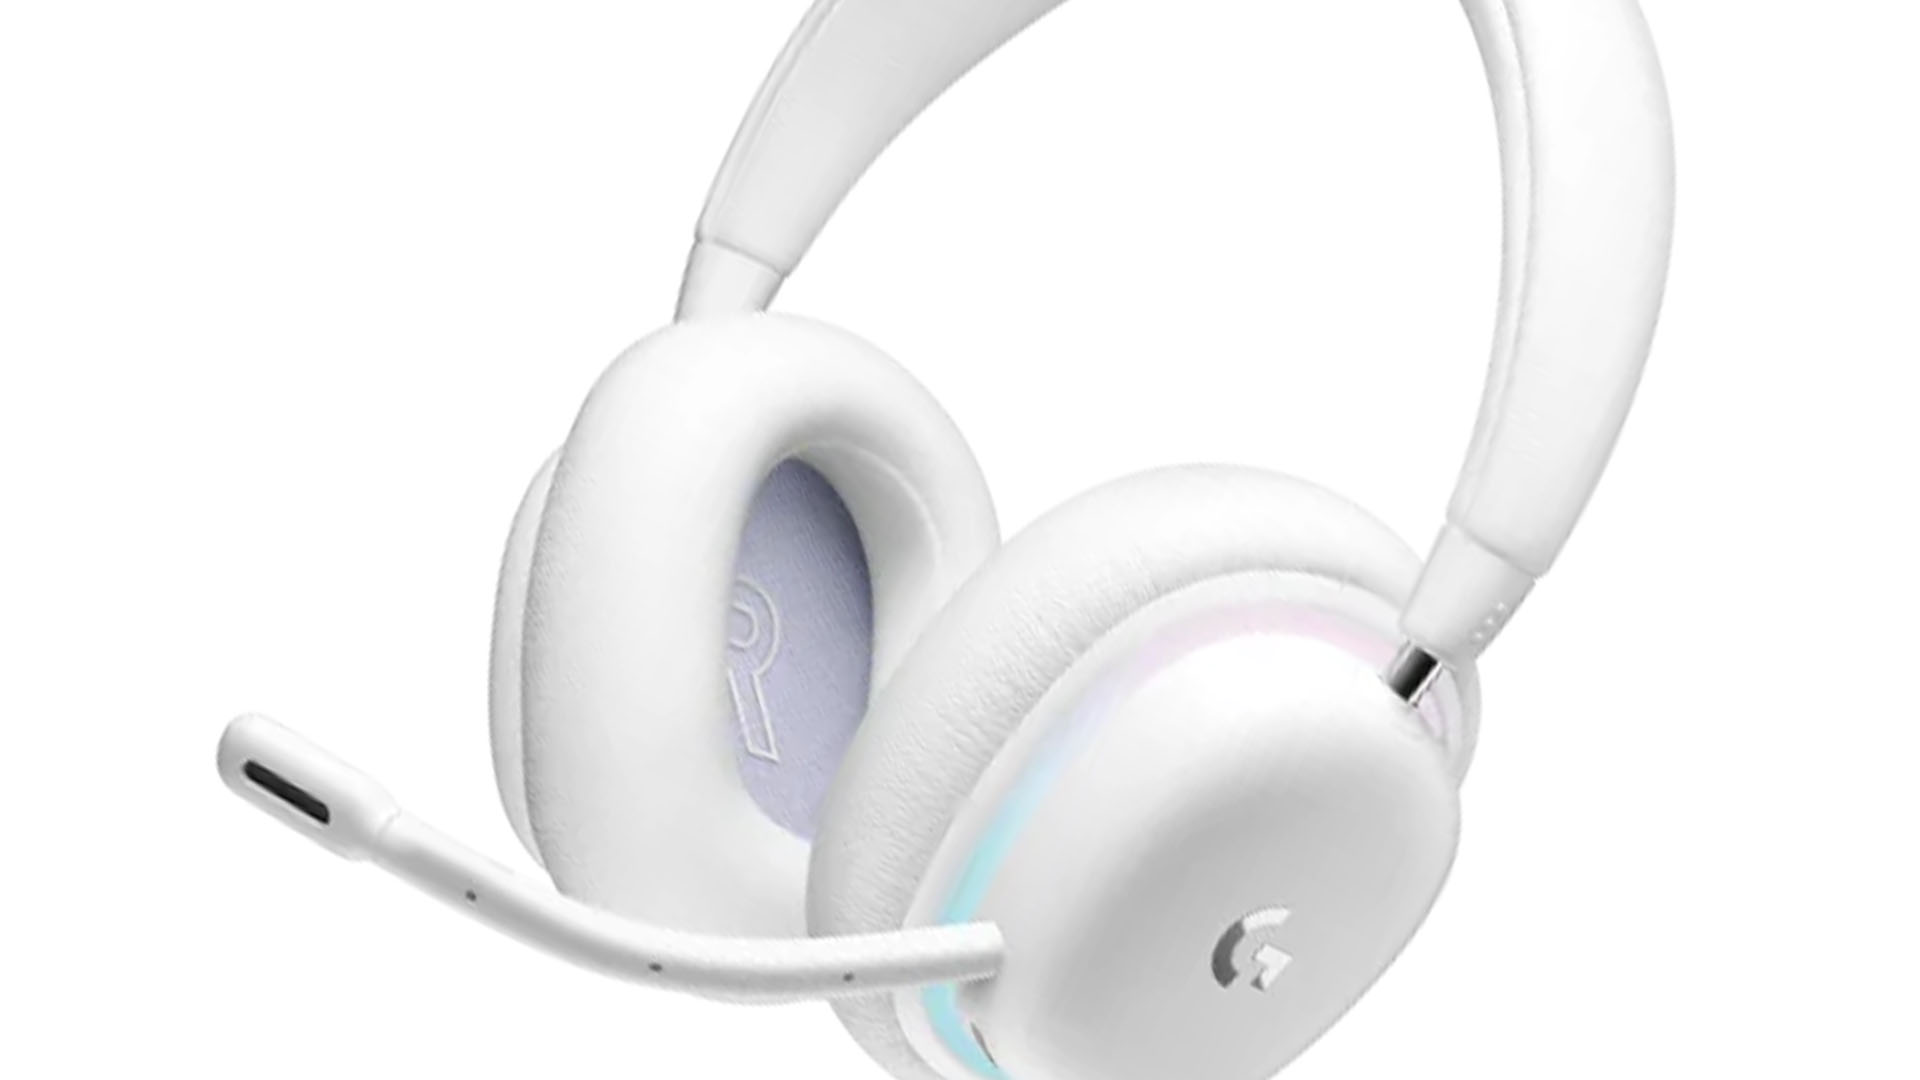 Logitech G735 Wireless Over-Ear Bluetooth Headphones White A00151